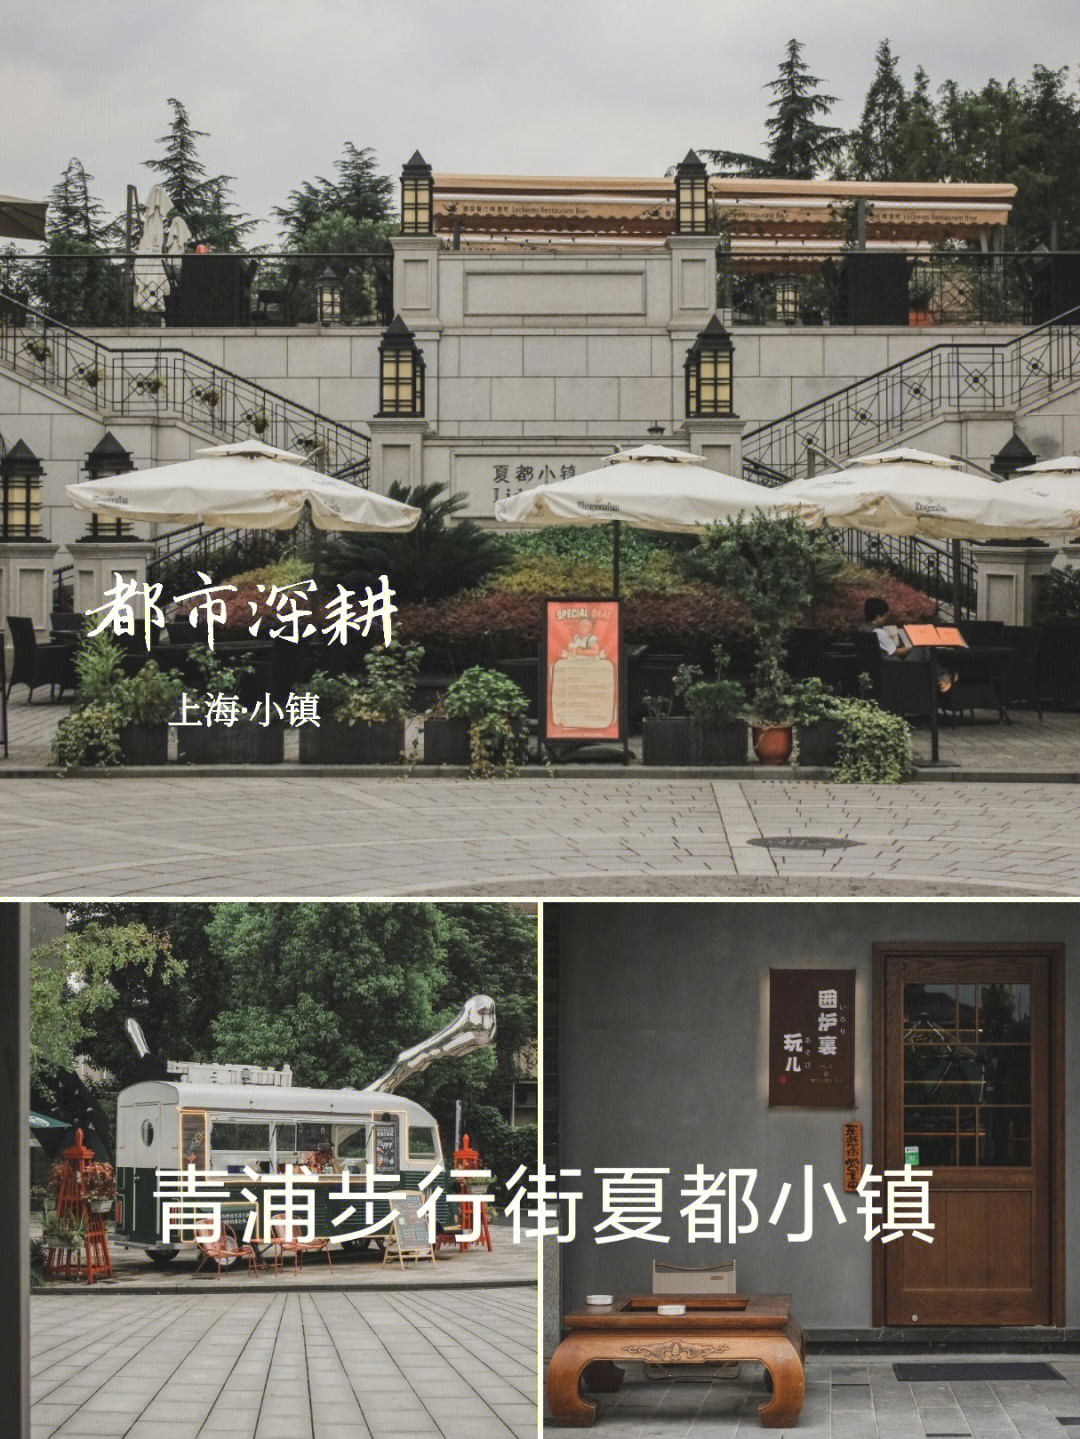 上海夏都小镇景点介绍图片